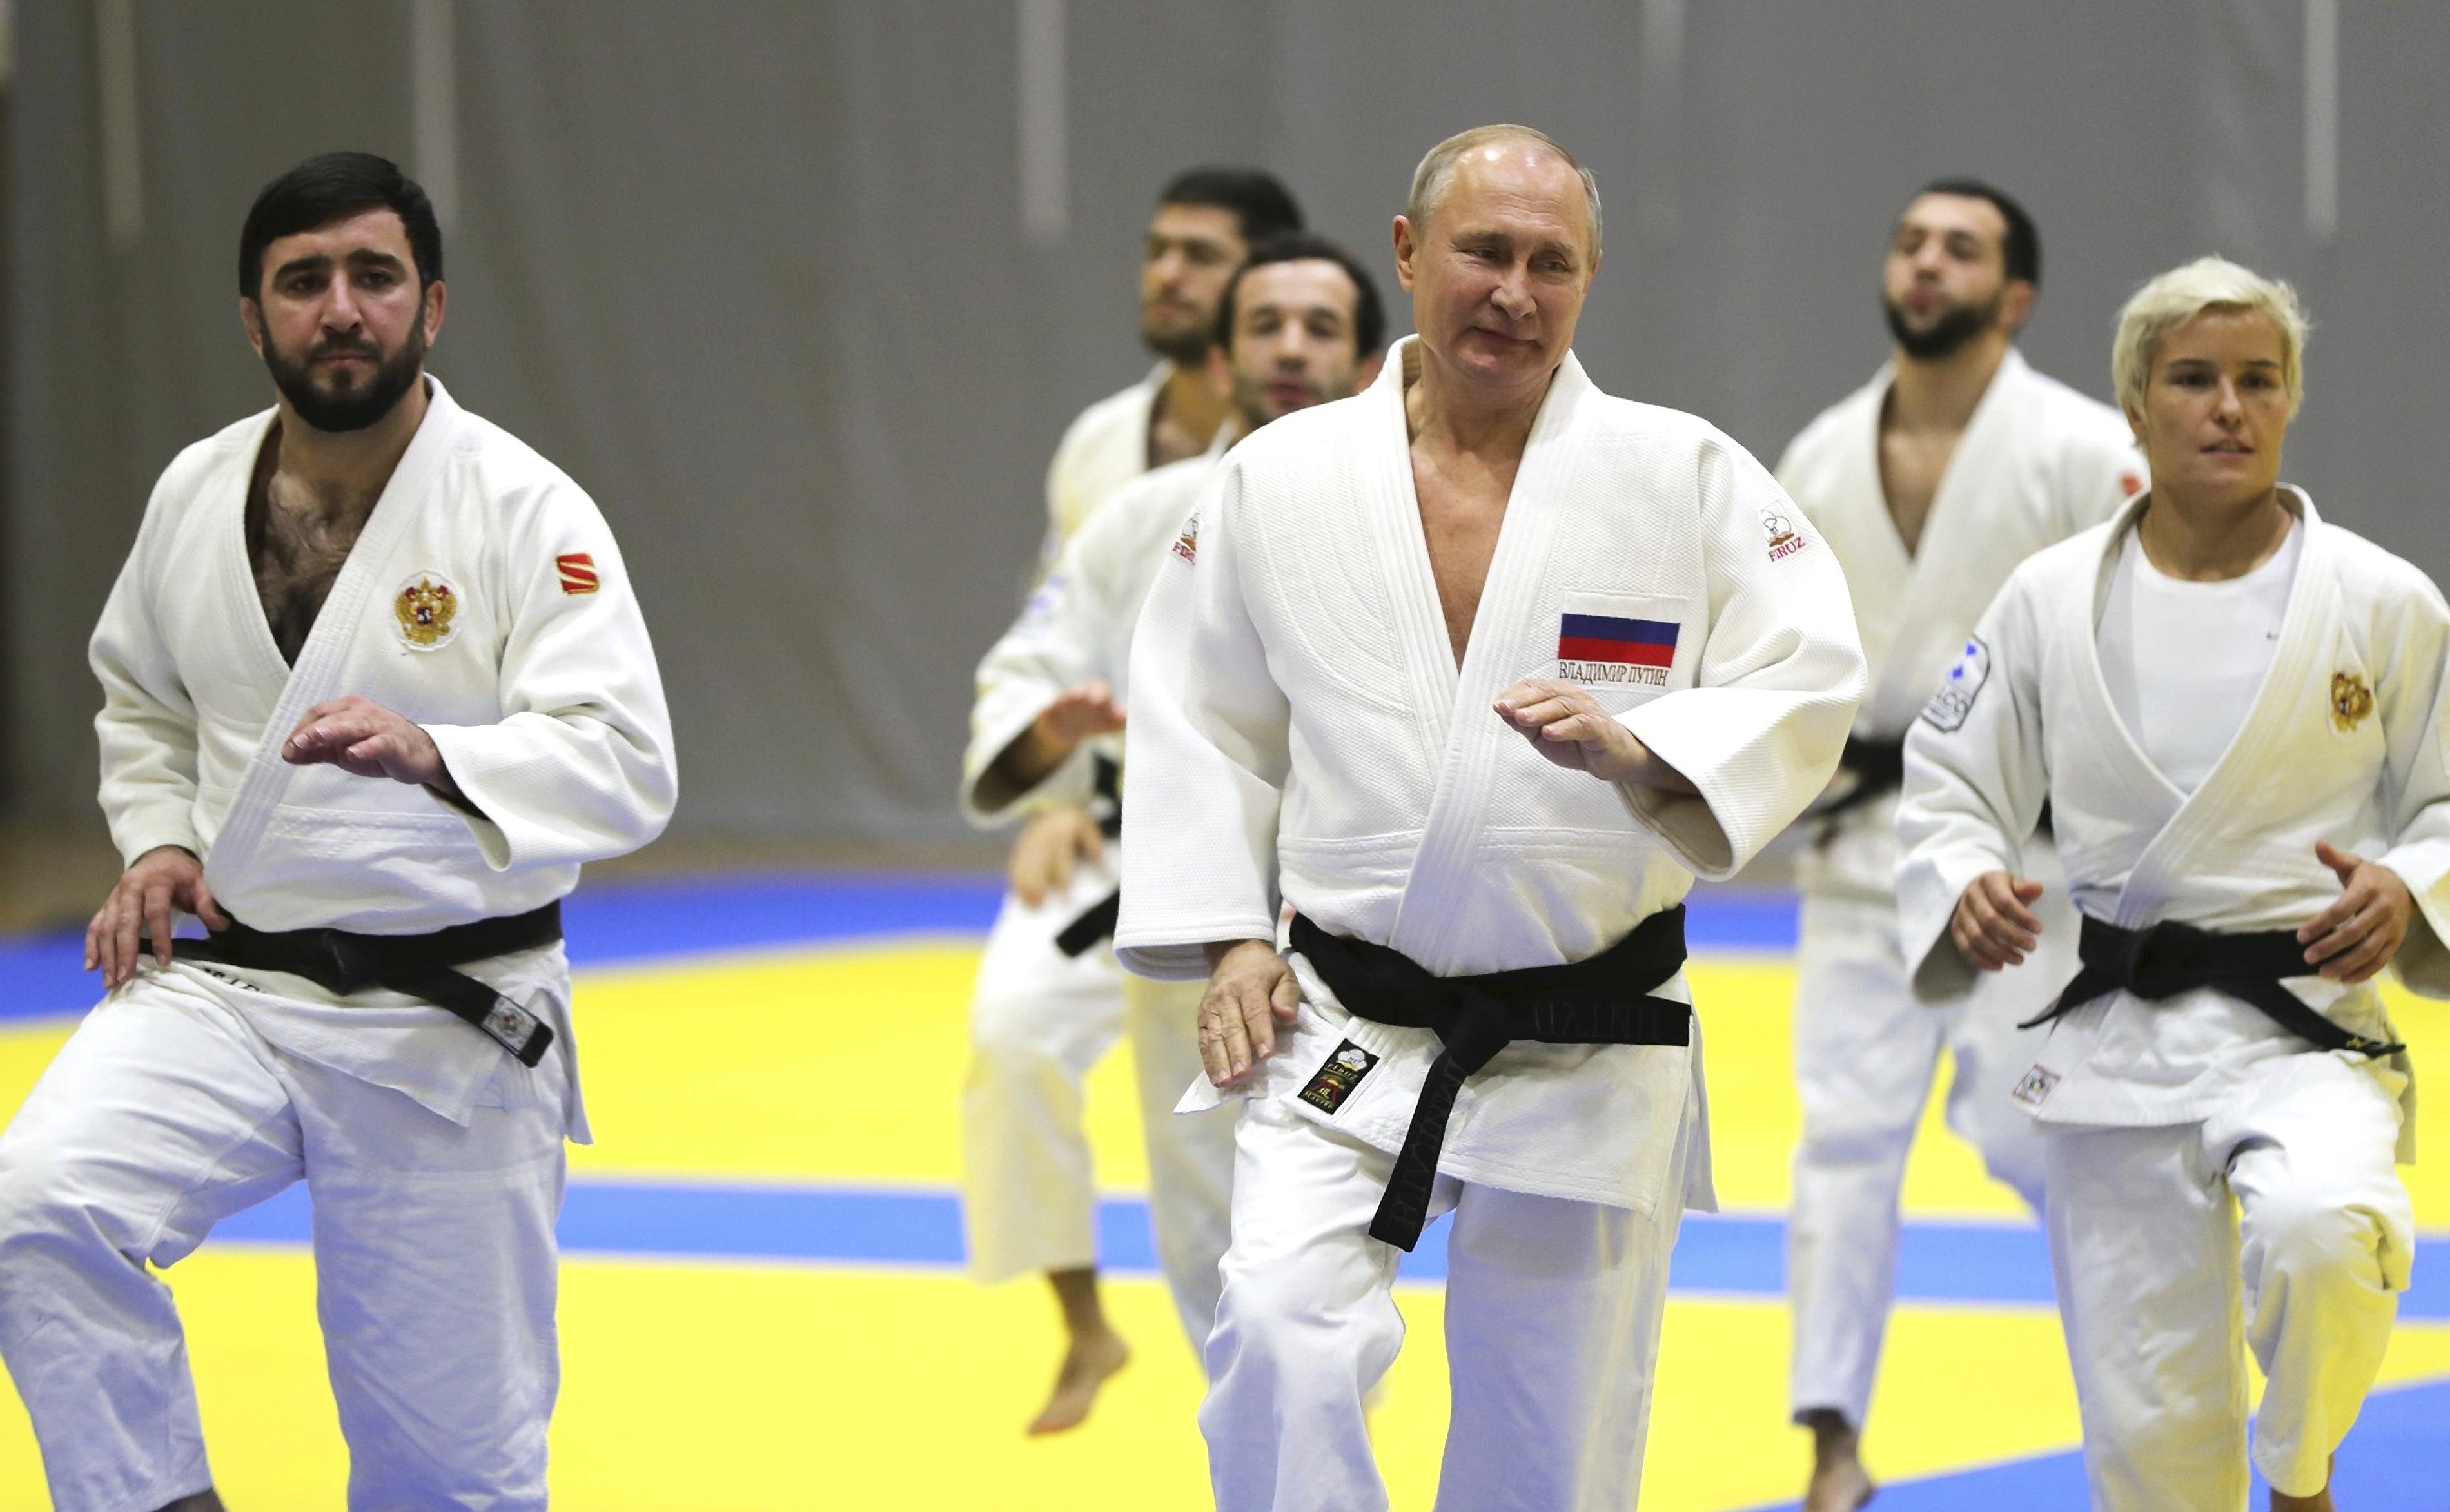 Władimir Putin stracił tytuł honorowego prezydenta federacji judo